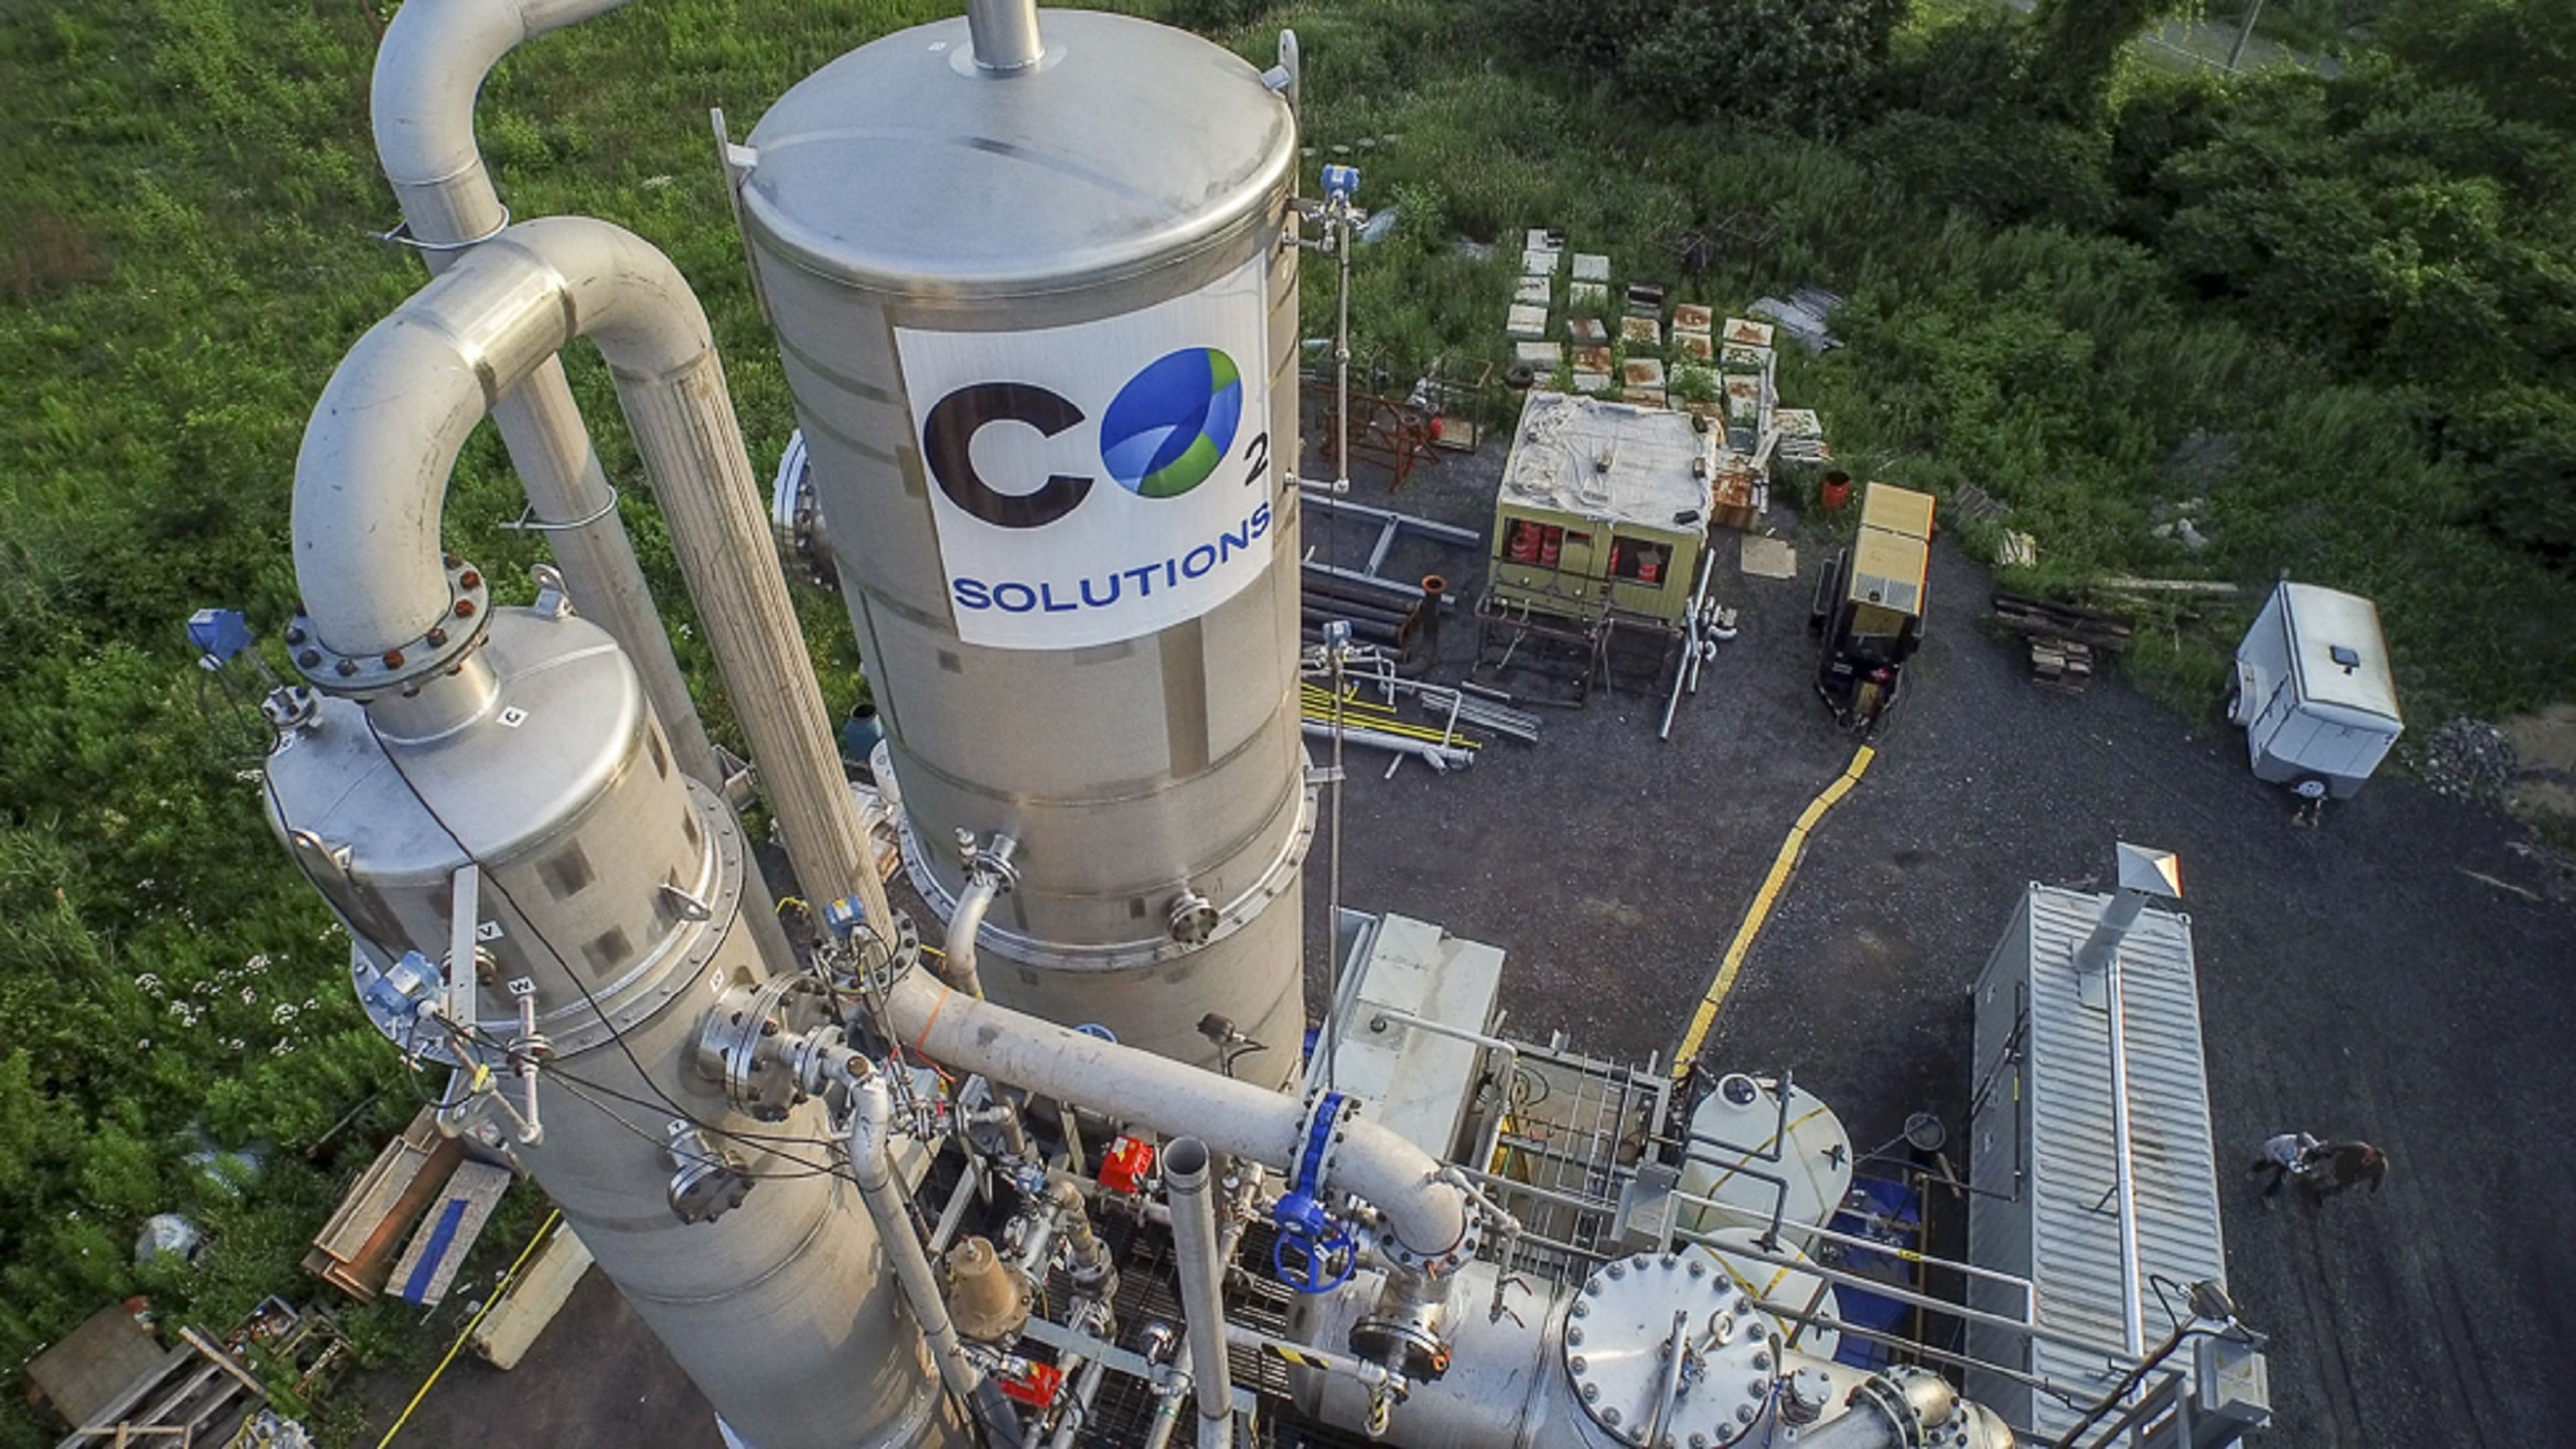 Unité de capture du carbone de CO2 Solutions située à Salaberry-de-Valleyfield, Québec